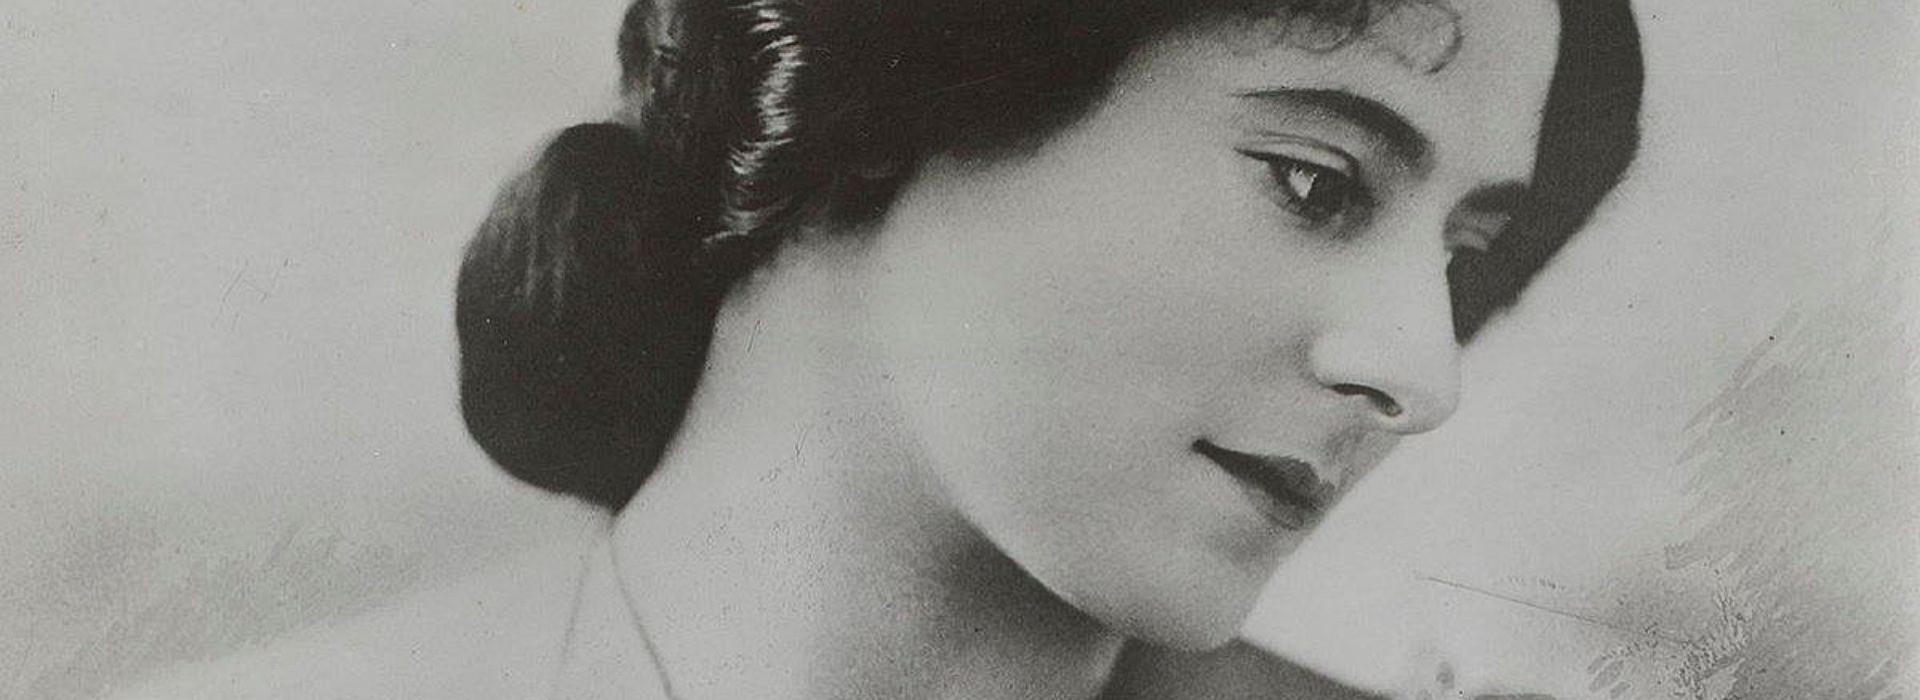 Mity, które demaskuje wystawa "Helena Rubinstein. Pierwsza dama piękna"